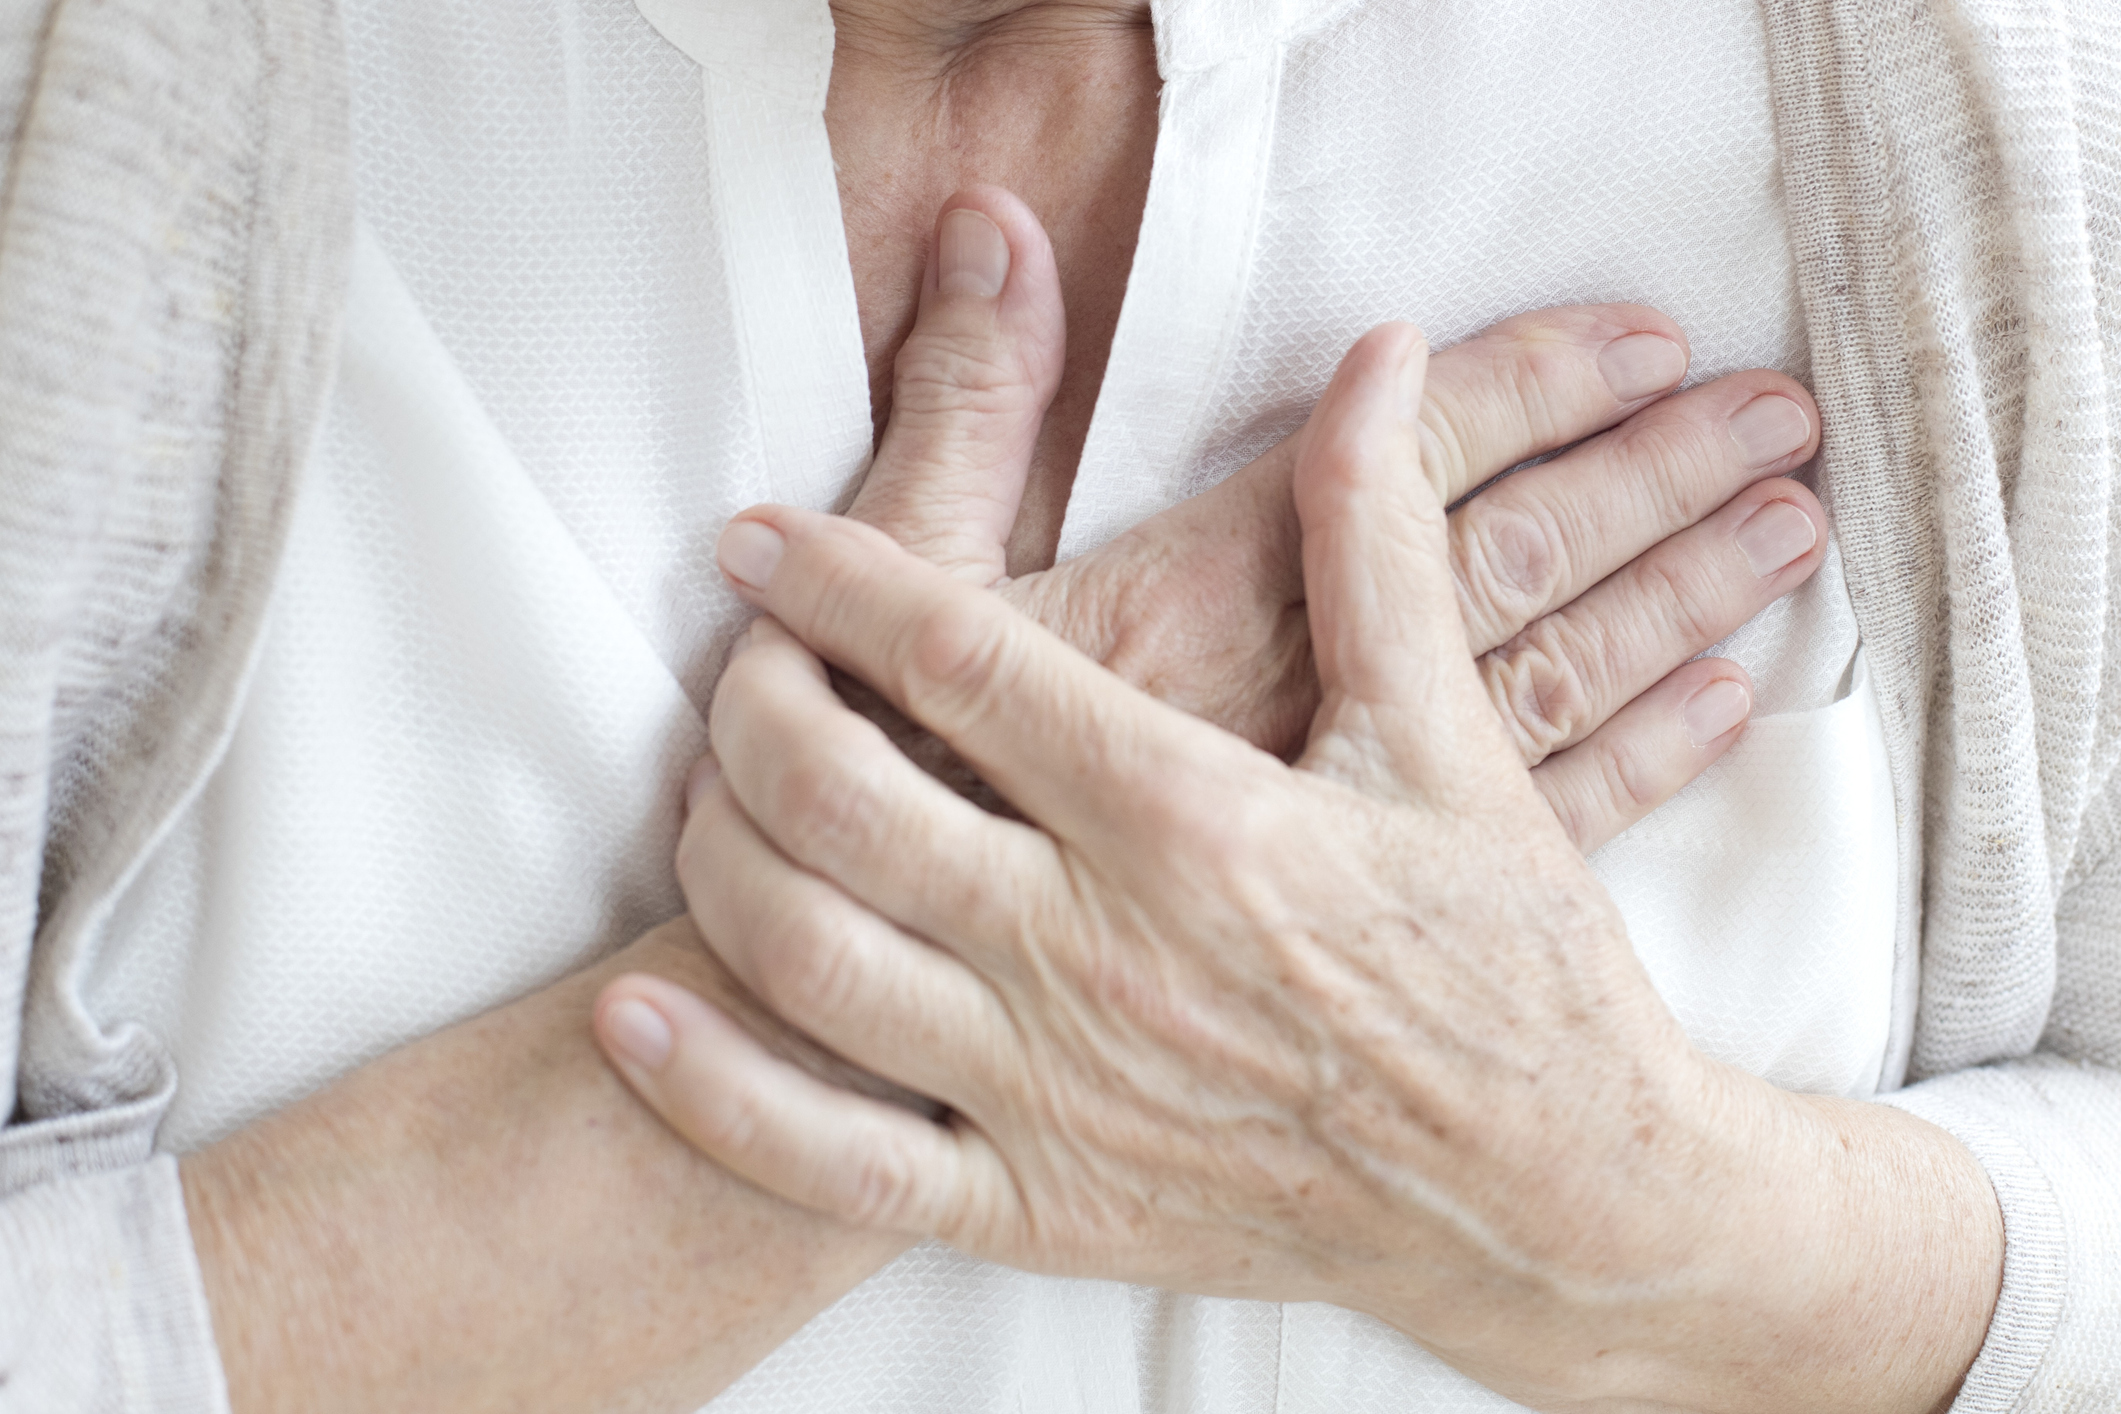 Ez megduplázza a szívroham utáni halálozás kockázatát – állítja egy új tanulmány